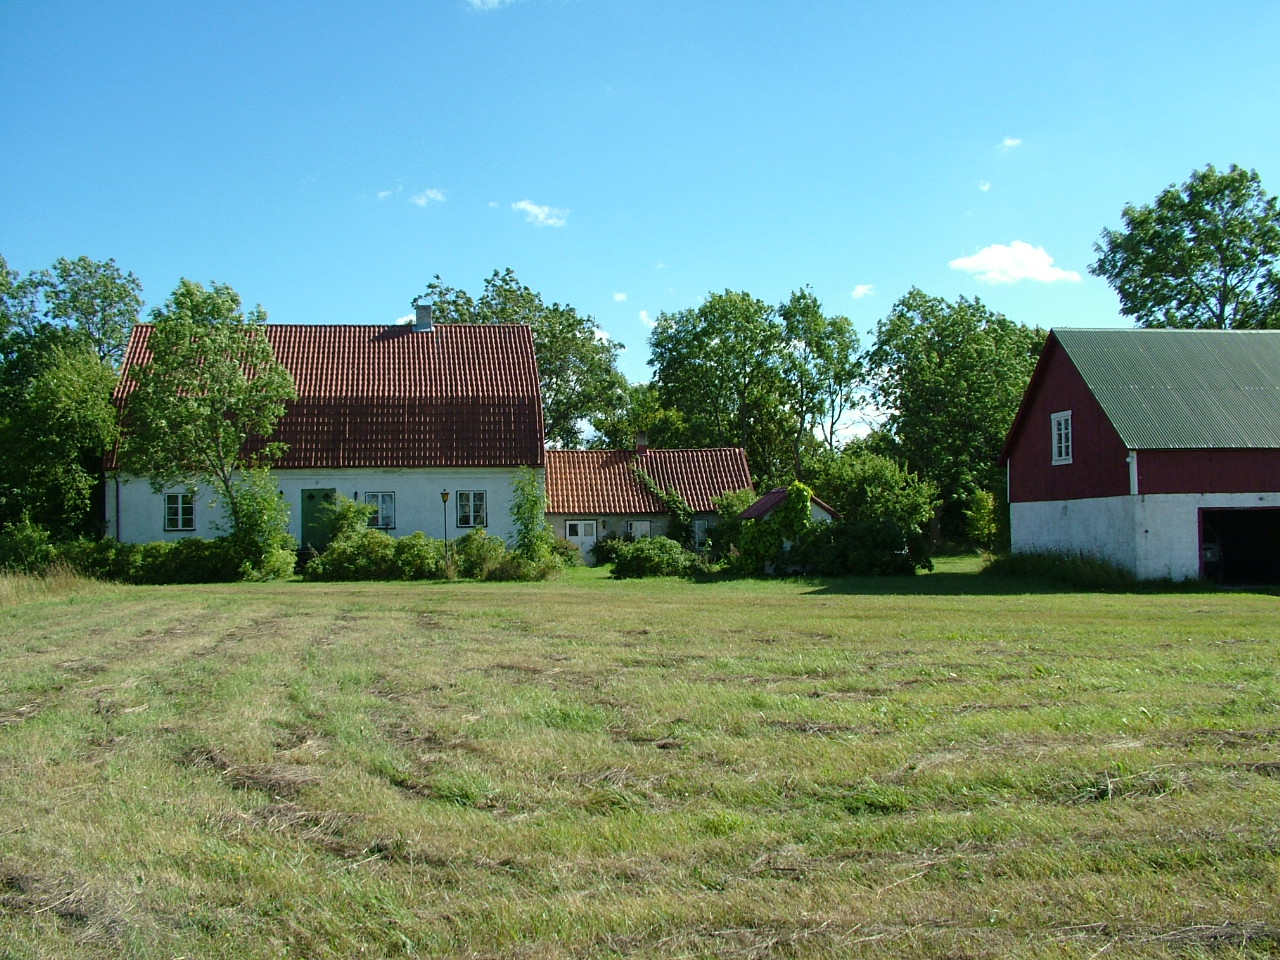 Två vita hus med bruna tegeltak och en rödvit lada med ett plåttak.